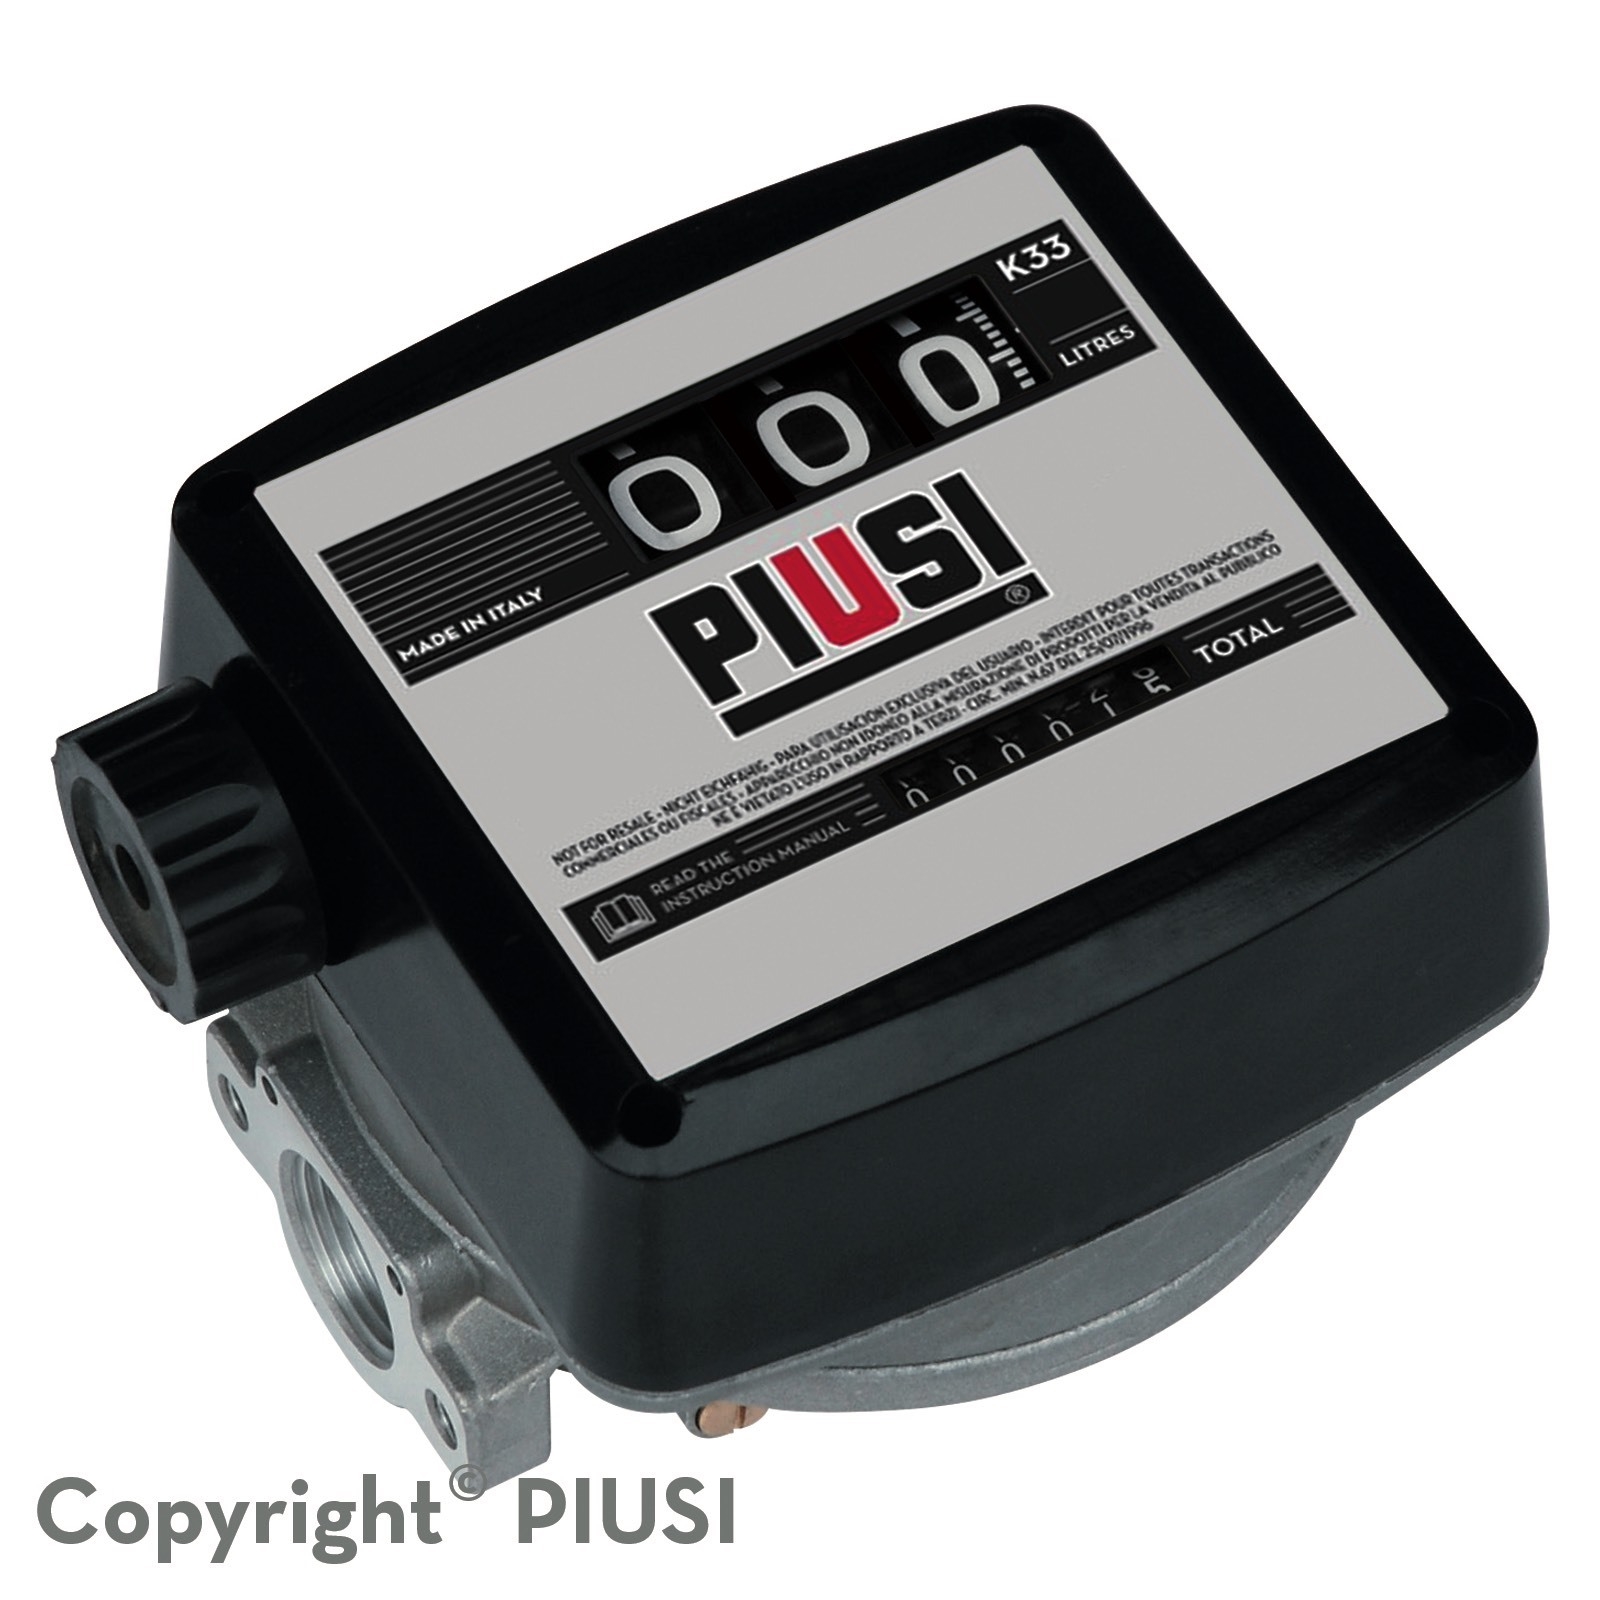 Đồng hồ đo lưu lượng xăng dầu Piusi K33 Atex